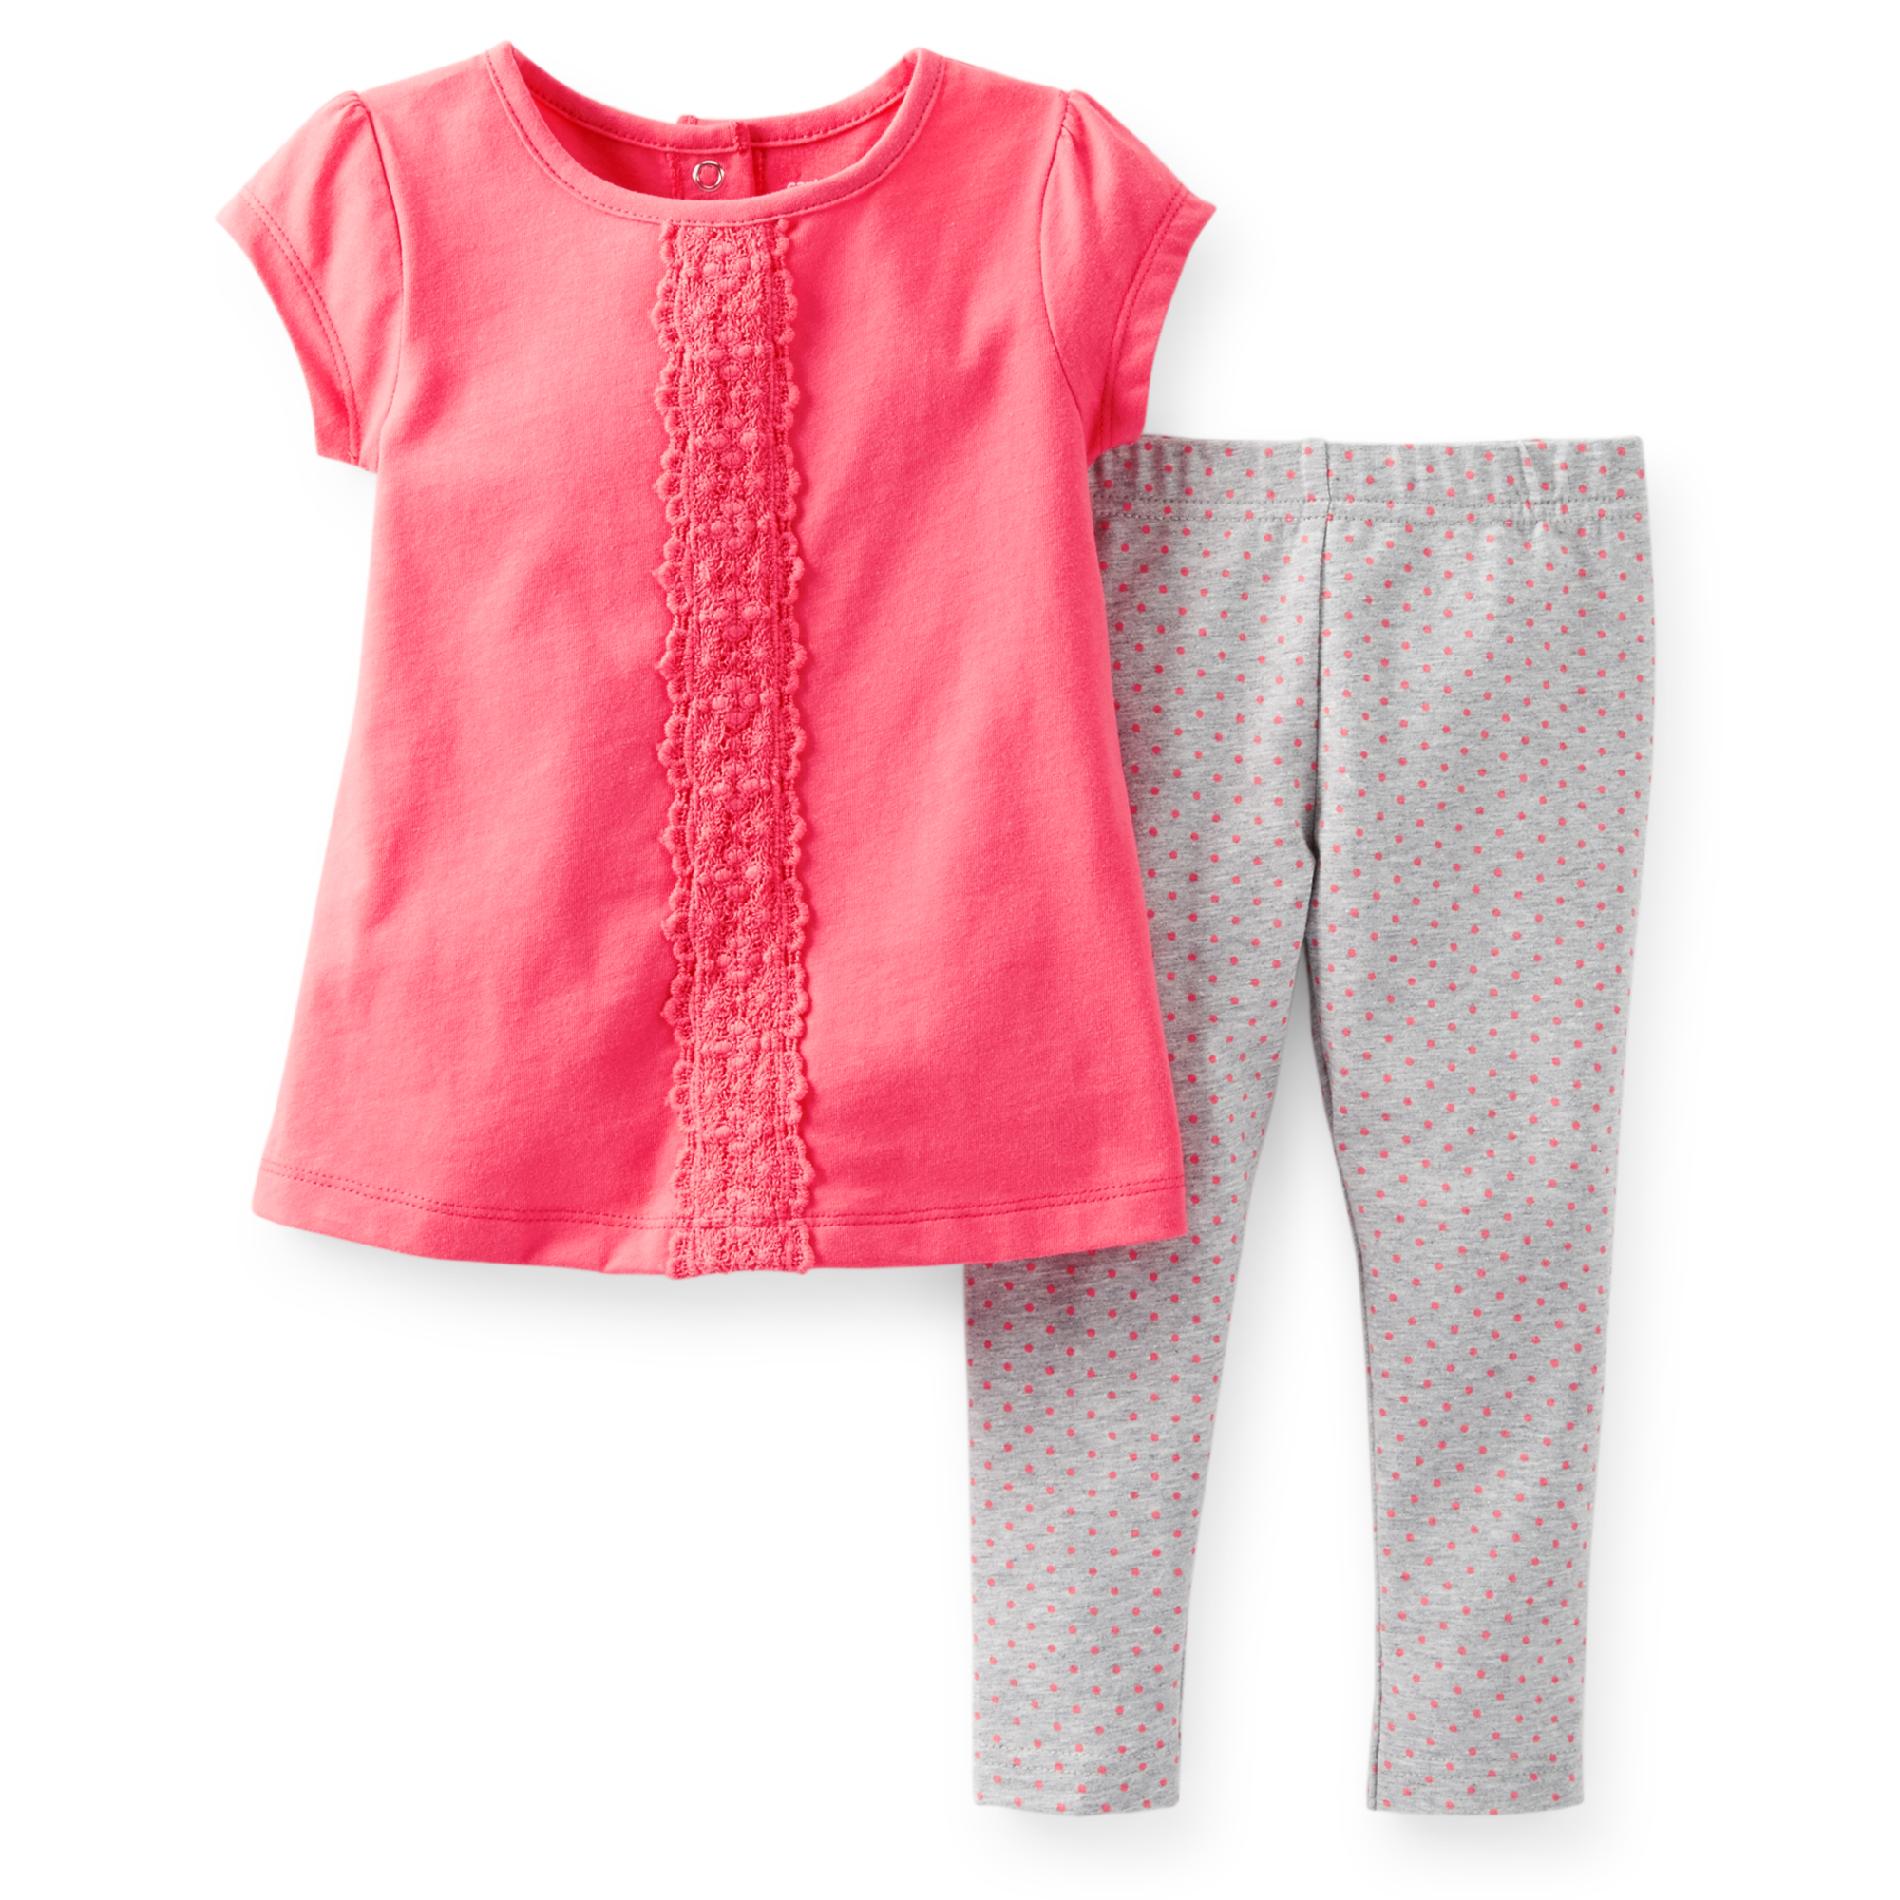 Carter's Newborn  Infant & Toddler Girl's Crocheted-Lace Top & Leggings